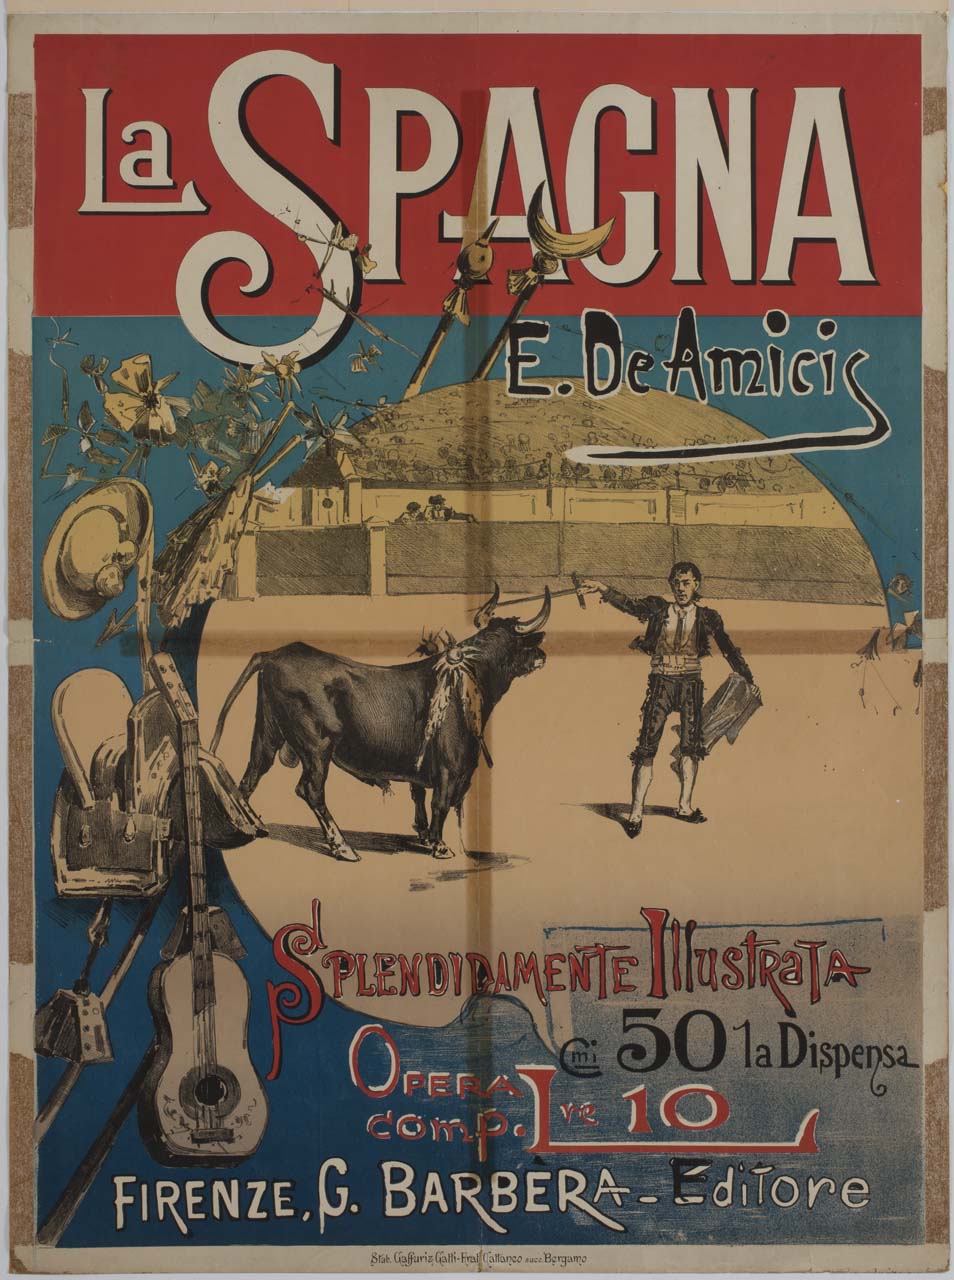 toro e torero in un'arena (manifesto) - ambito italiano (sec. XIX)